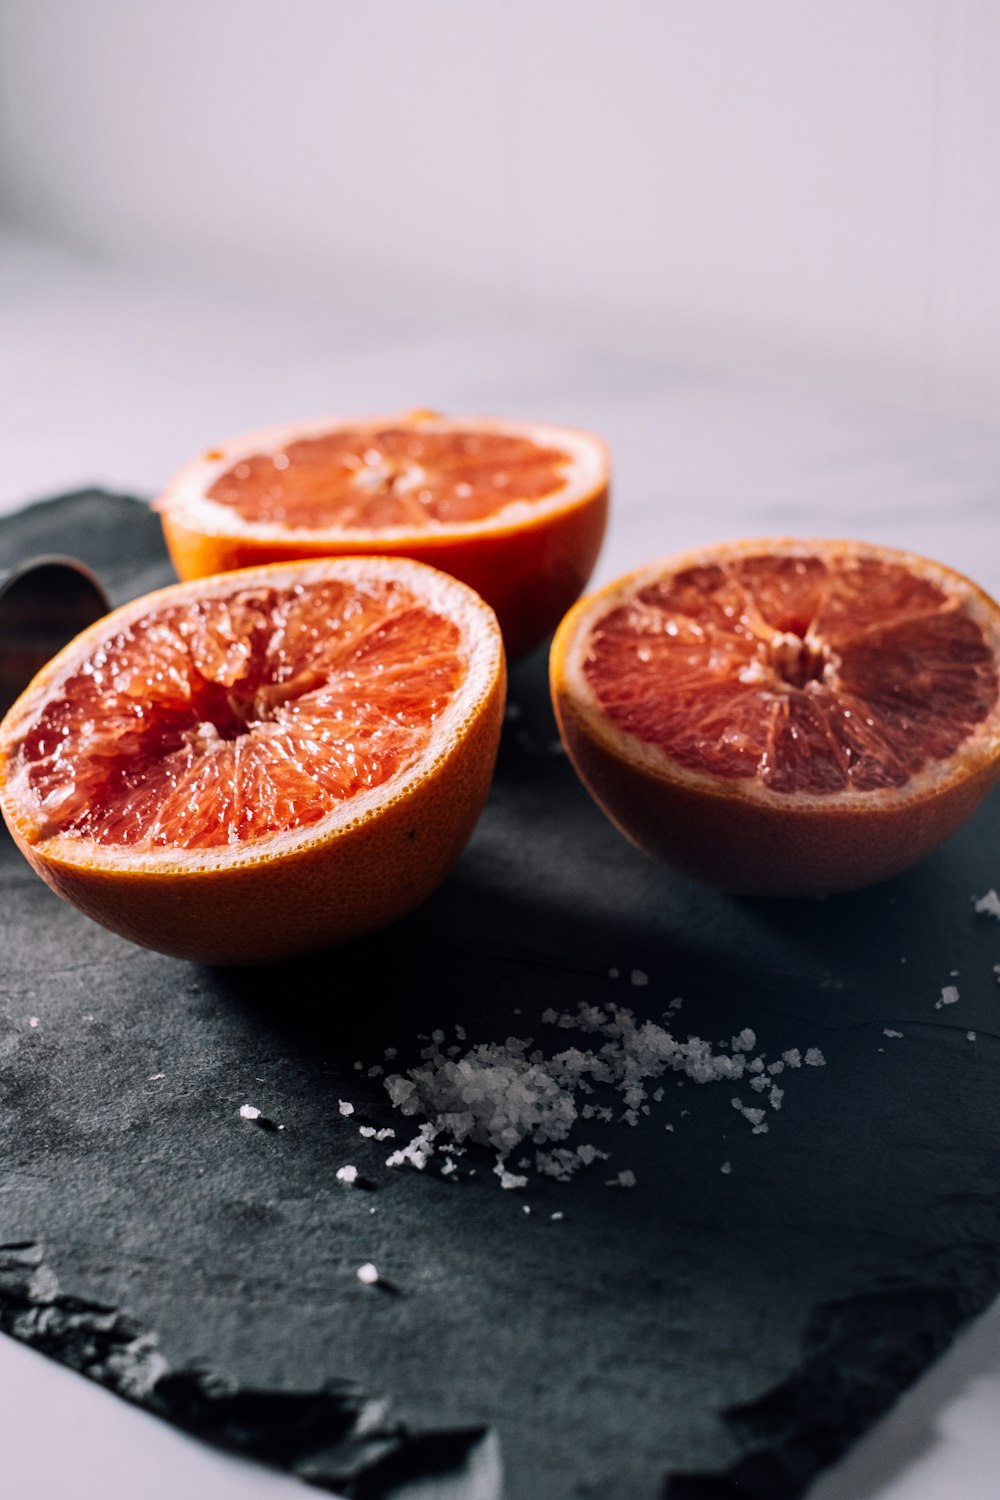 sliced orange fruits